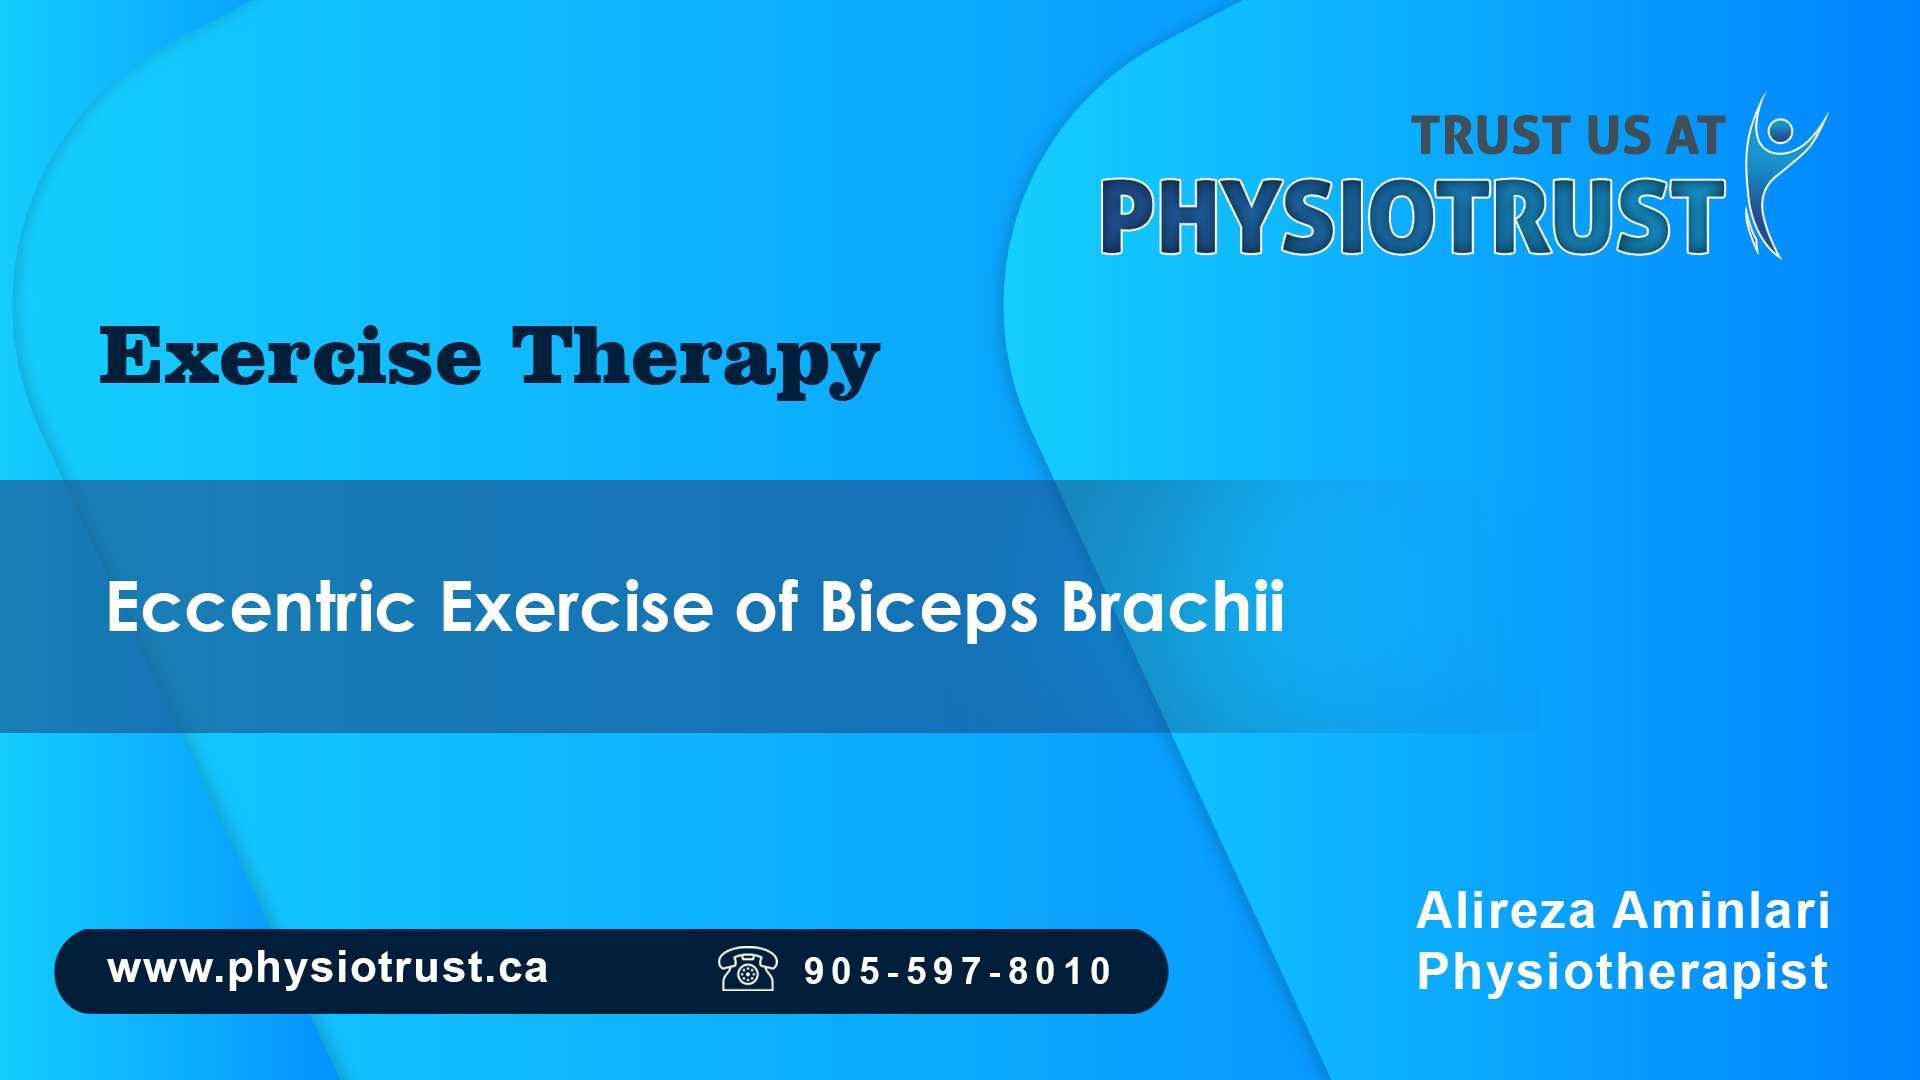 Eccentric exercise of biceps Brachii